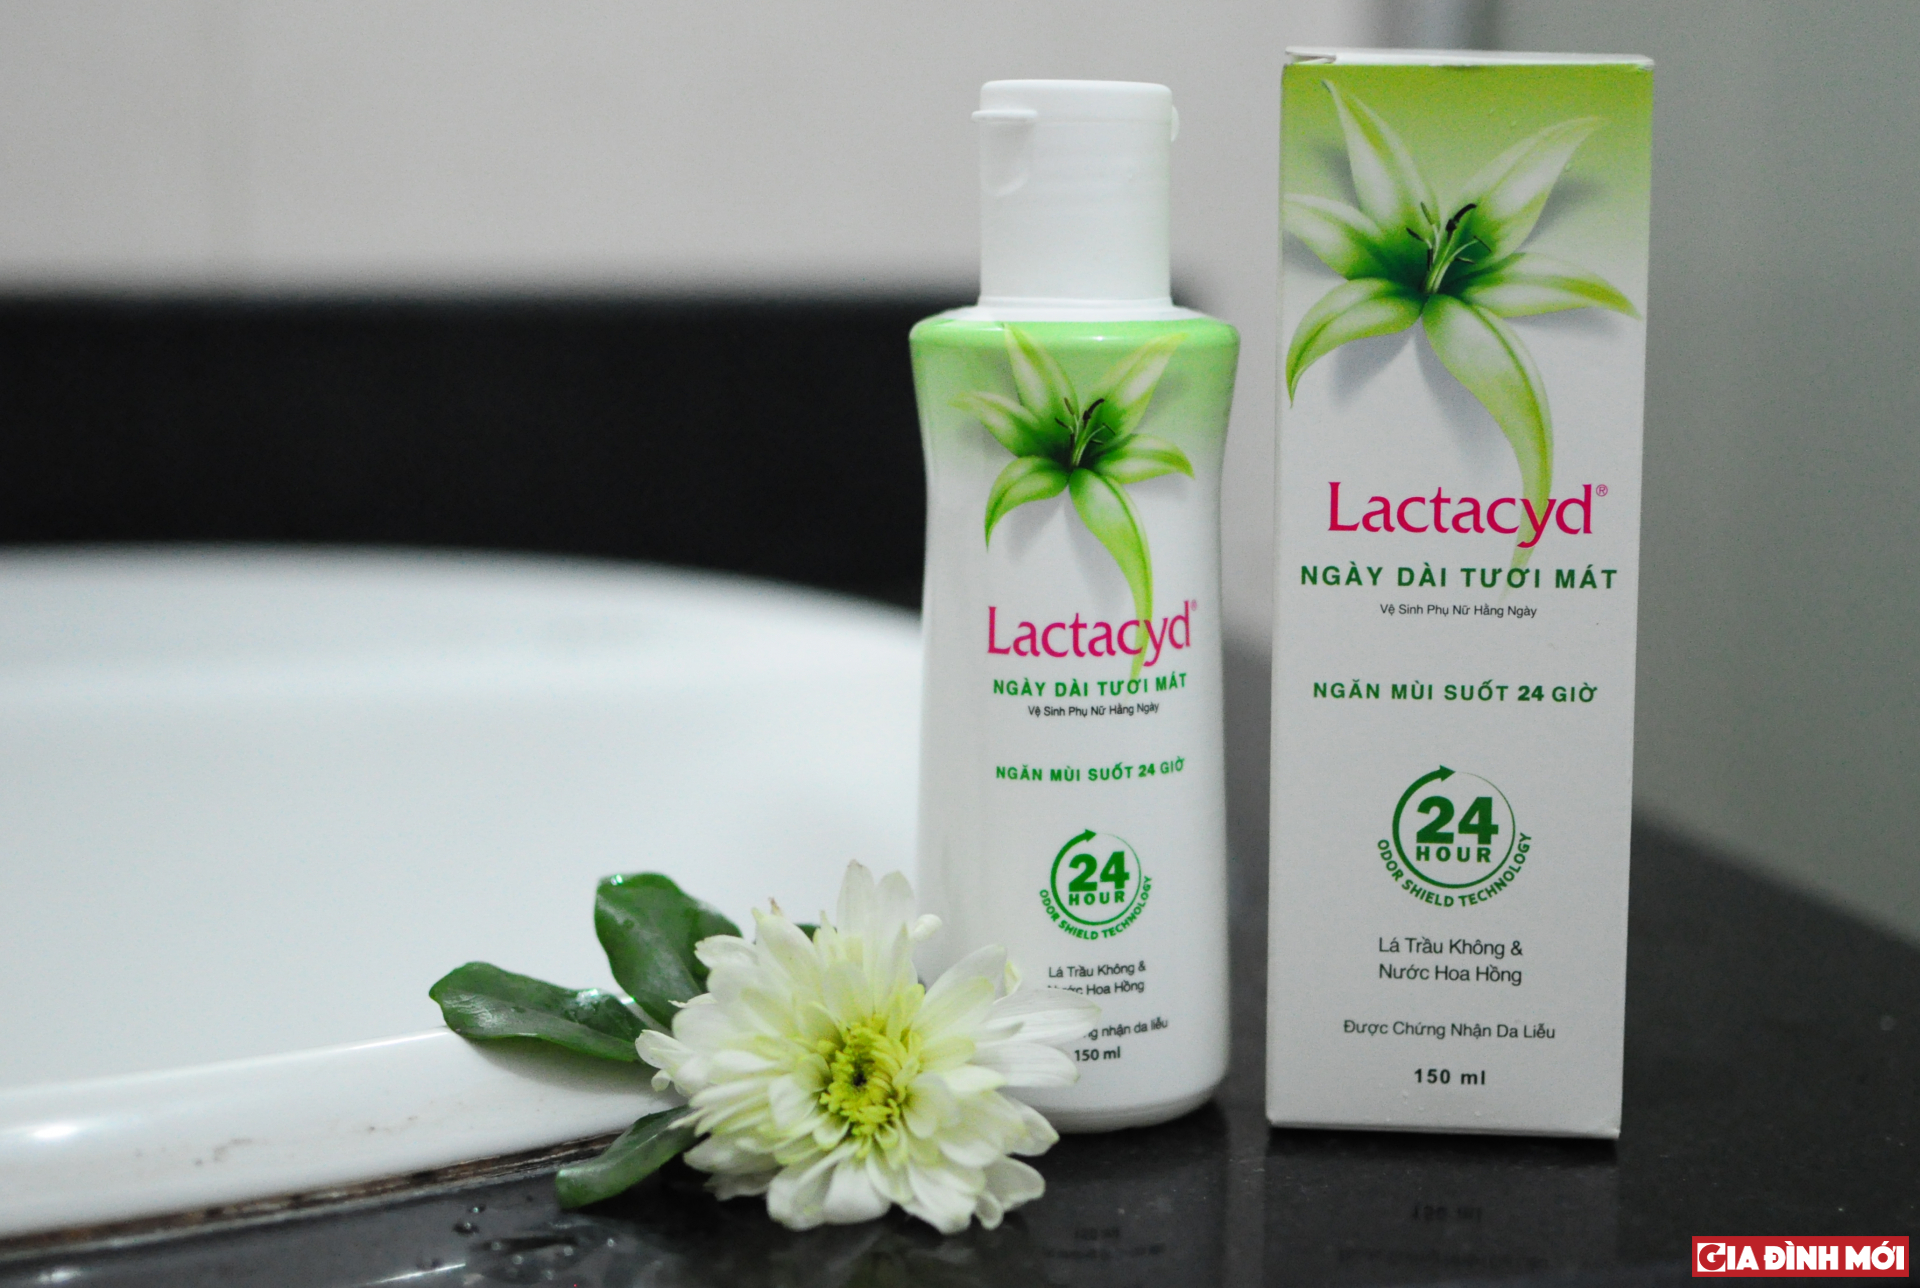 Lactacyd có 3 sản phẩm dung dịch vệ sinh phụ nữ, trong đó 